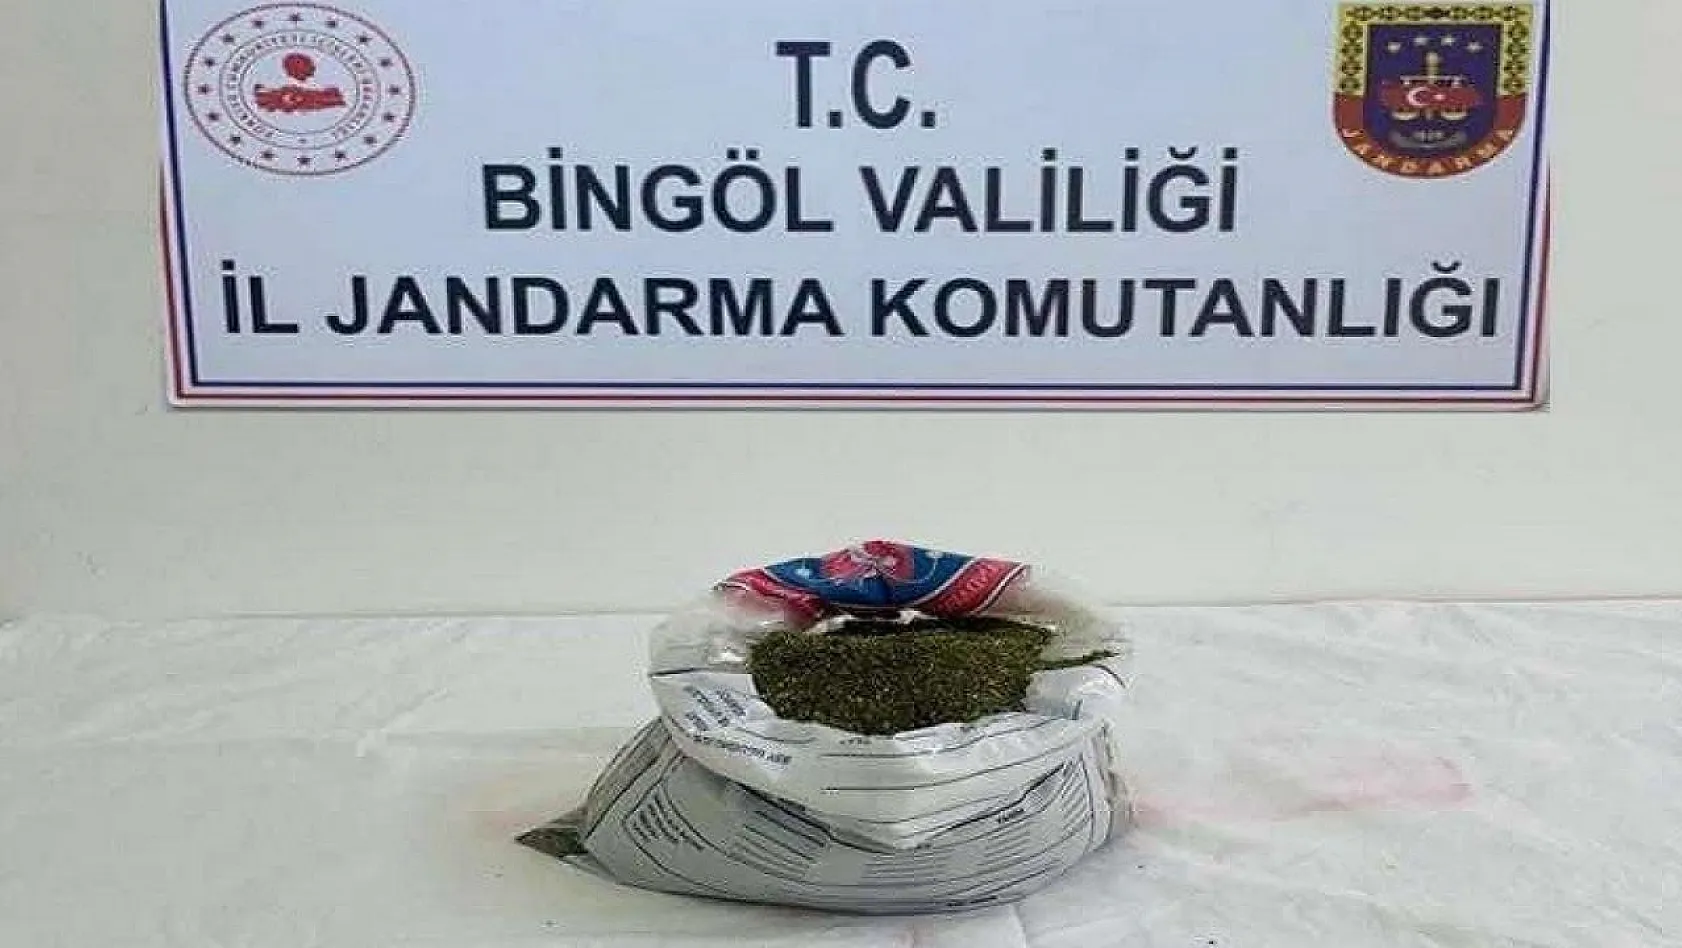 Bingöl'de menfez altında 1 kilo 566 gram uyuşturucu ele geçirildi